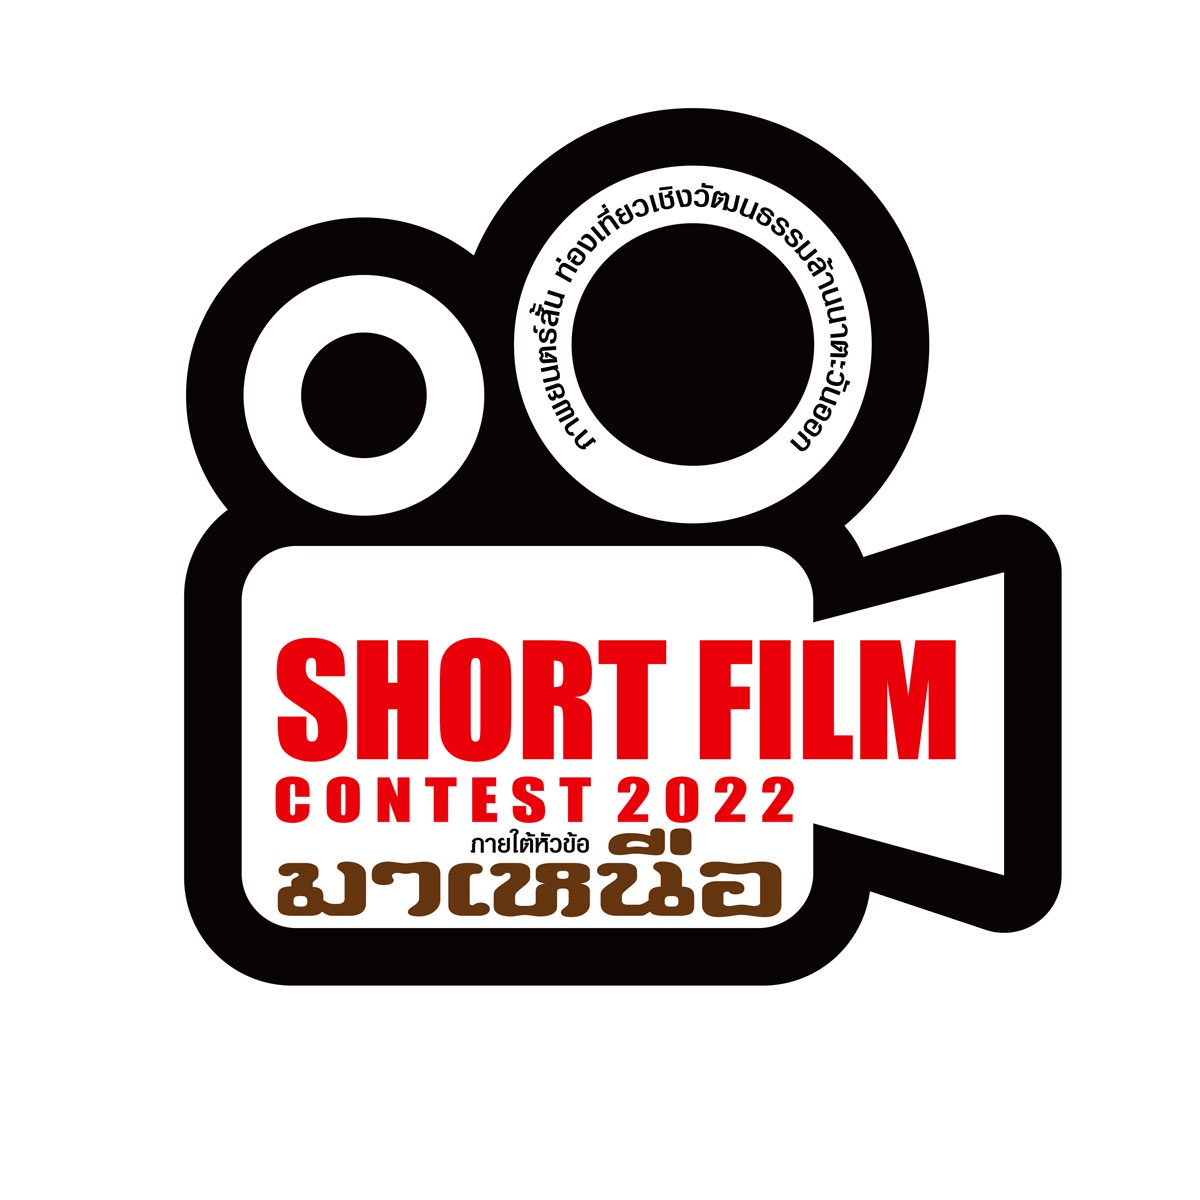 การประกวดภาพยนตร์สั้น ส่งเสริมท่องเที่ยวเชิงวัฒนธรรมล้านนาตะวันออก Short film contest 2022 ภายใต้หัวข้อ มาเหนือ